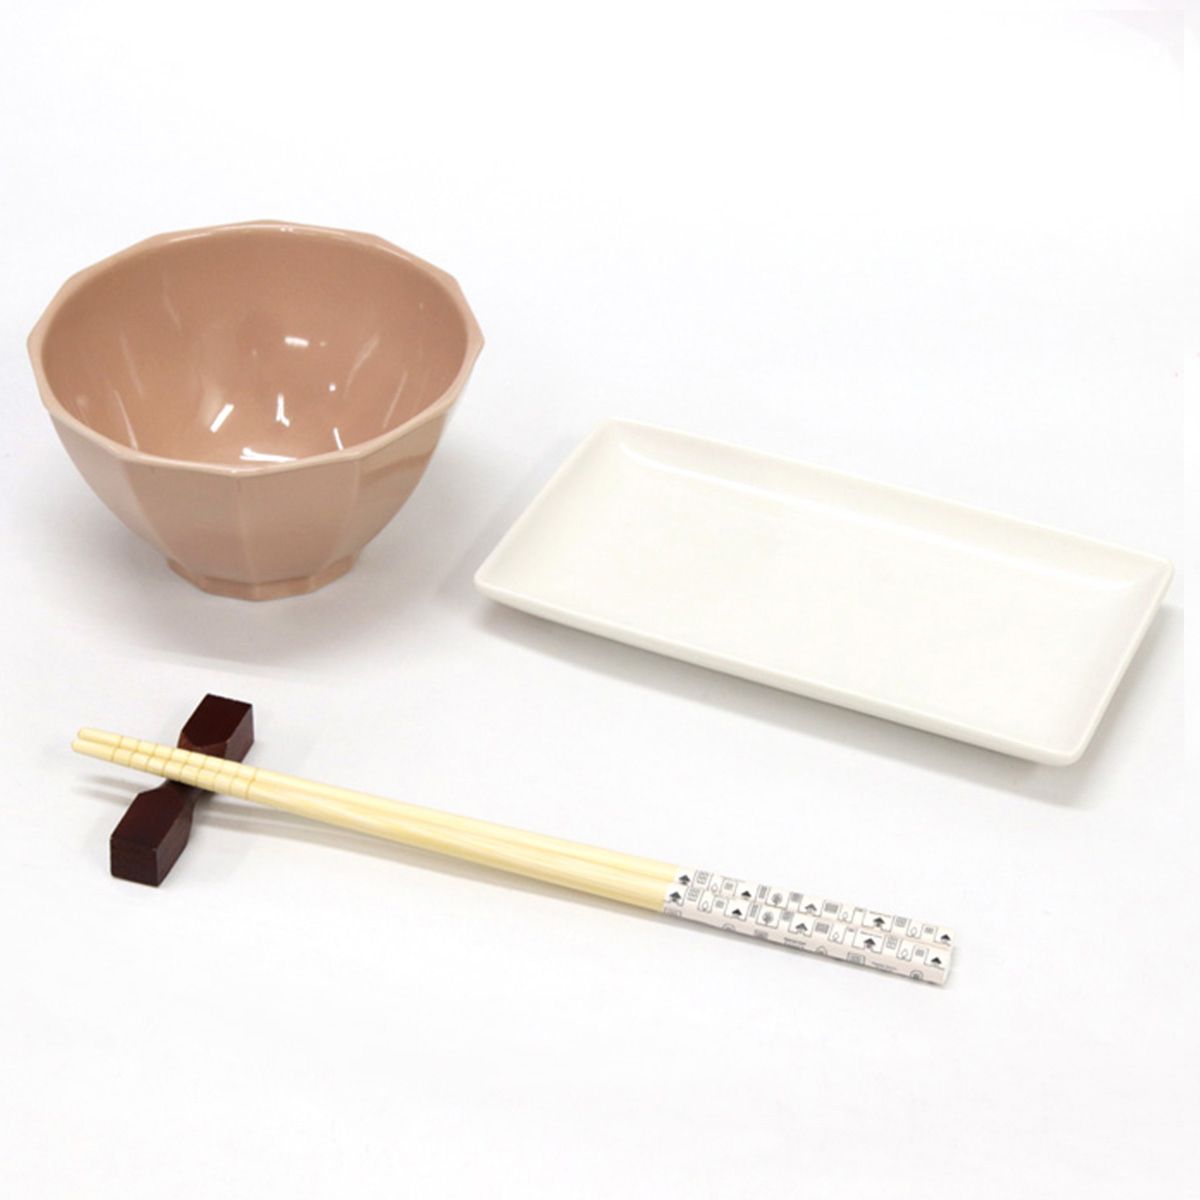 お箸 天然竹製  タウン箸 ホワイト  22.5cm 9001/345945